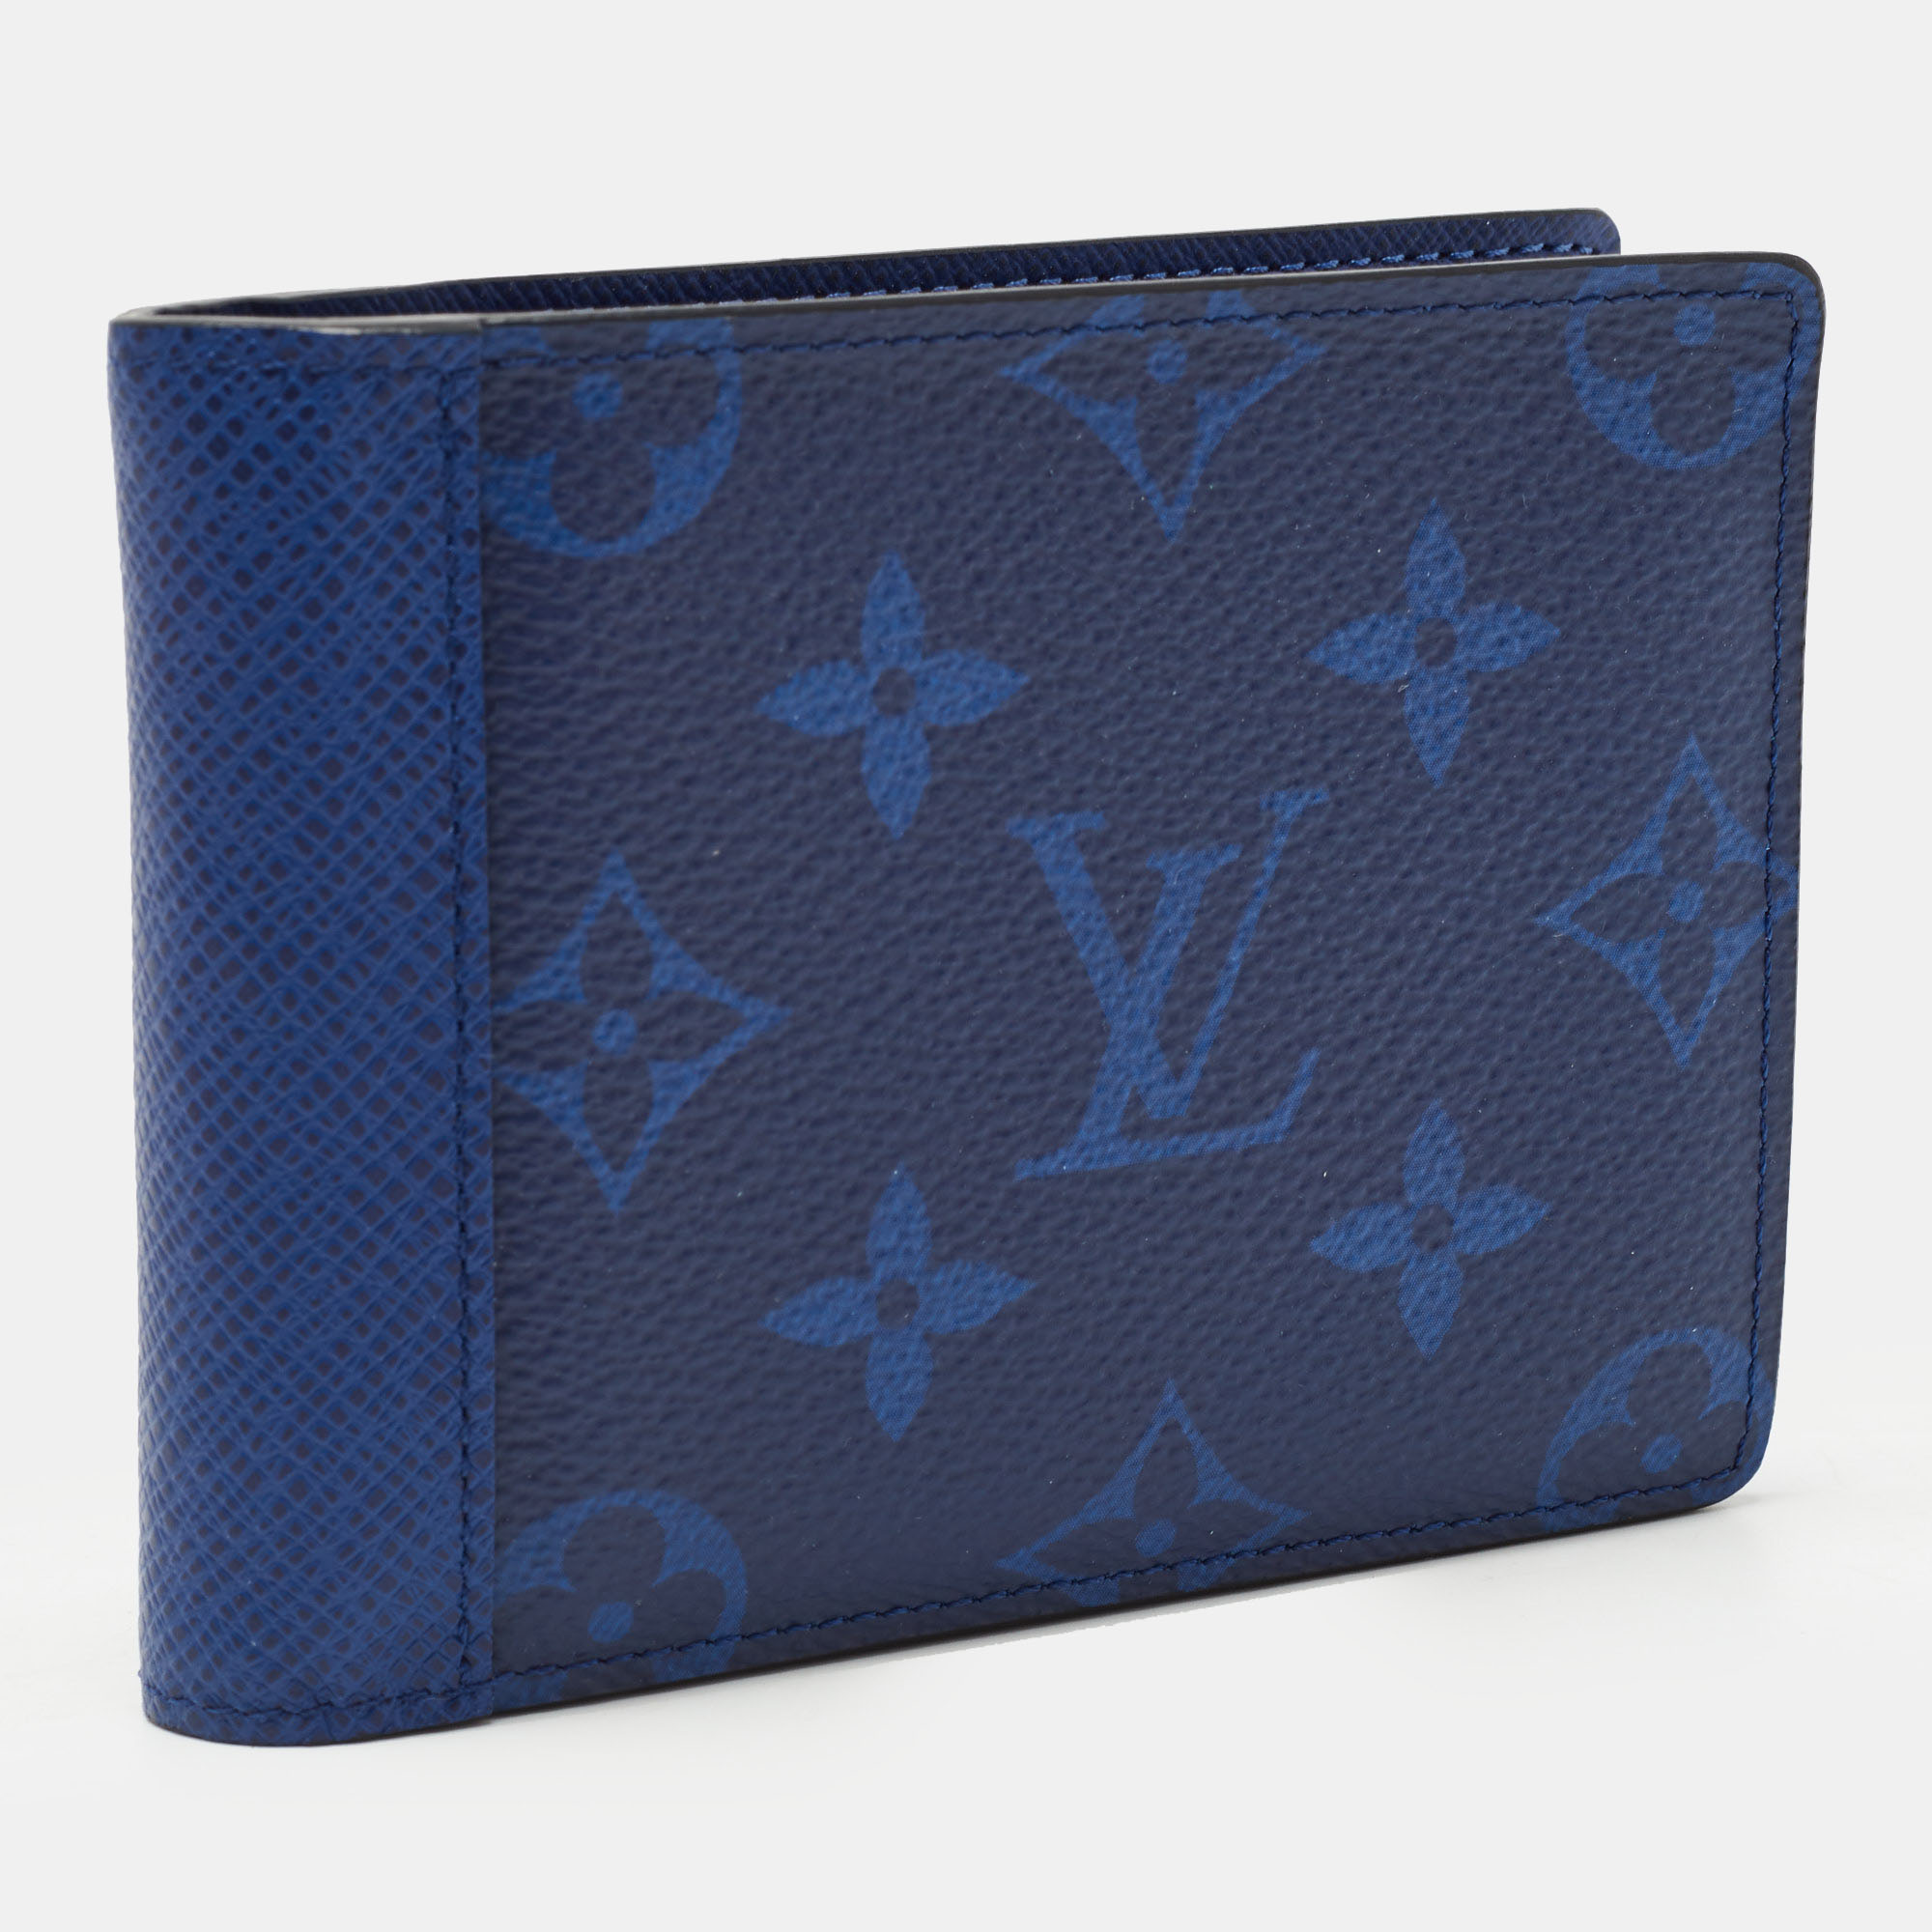 Louis Vuitton - Multiple Wallet - Monogram Canvas - Cobalt - Men - Luxury